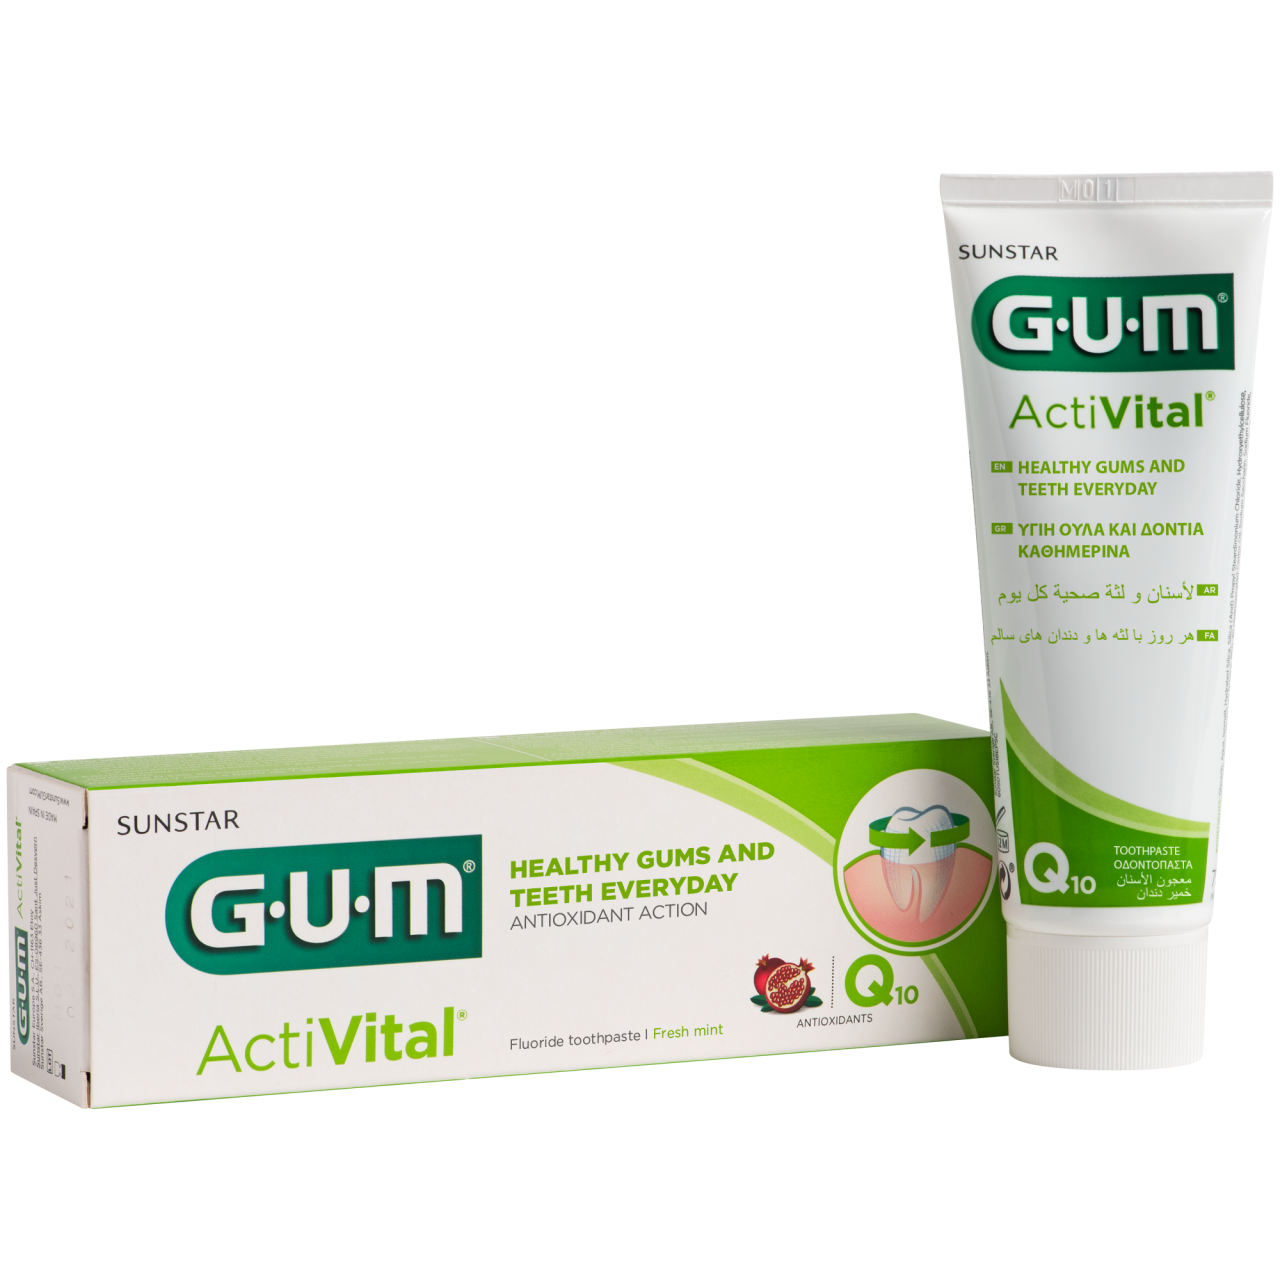 P6050-BDU-GUM-Activital-Toothpaste-75ml-Box-Tube